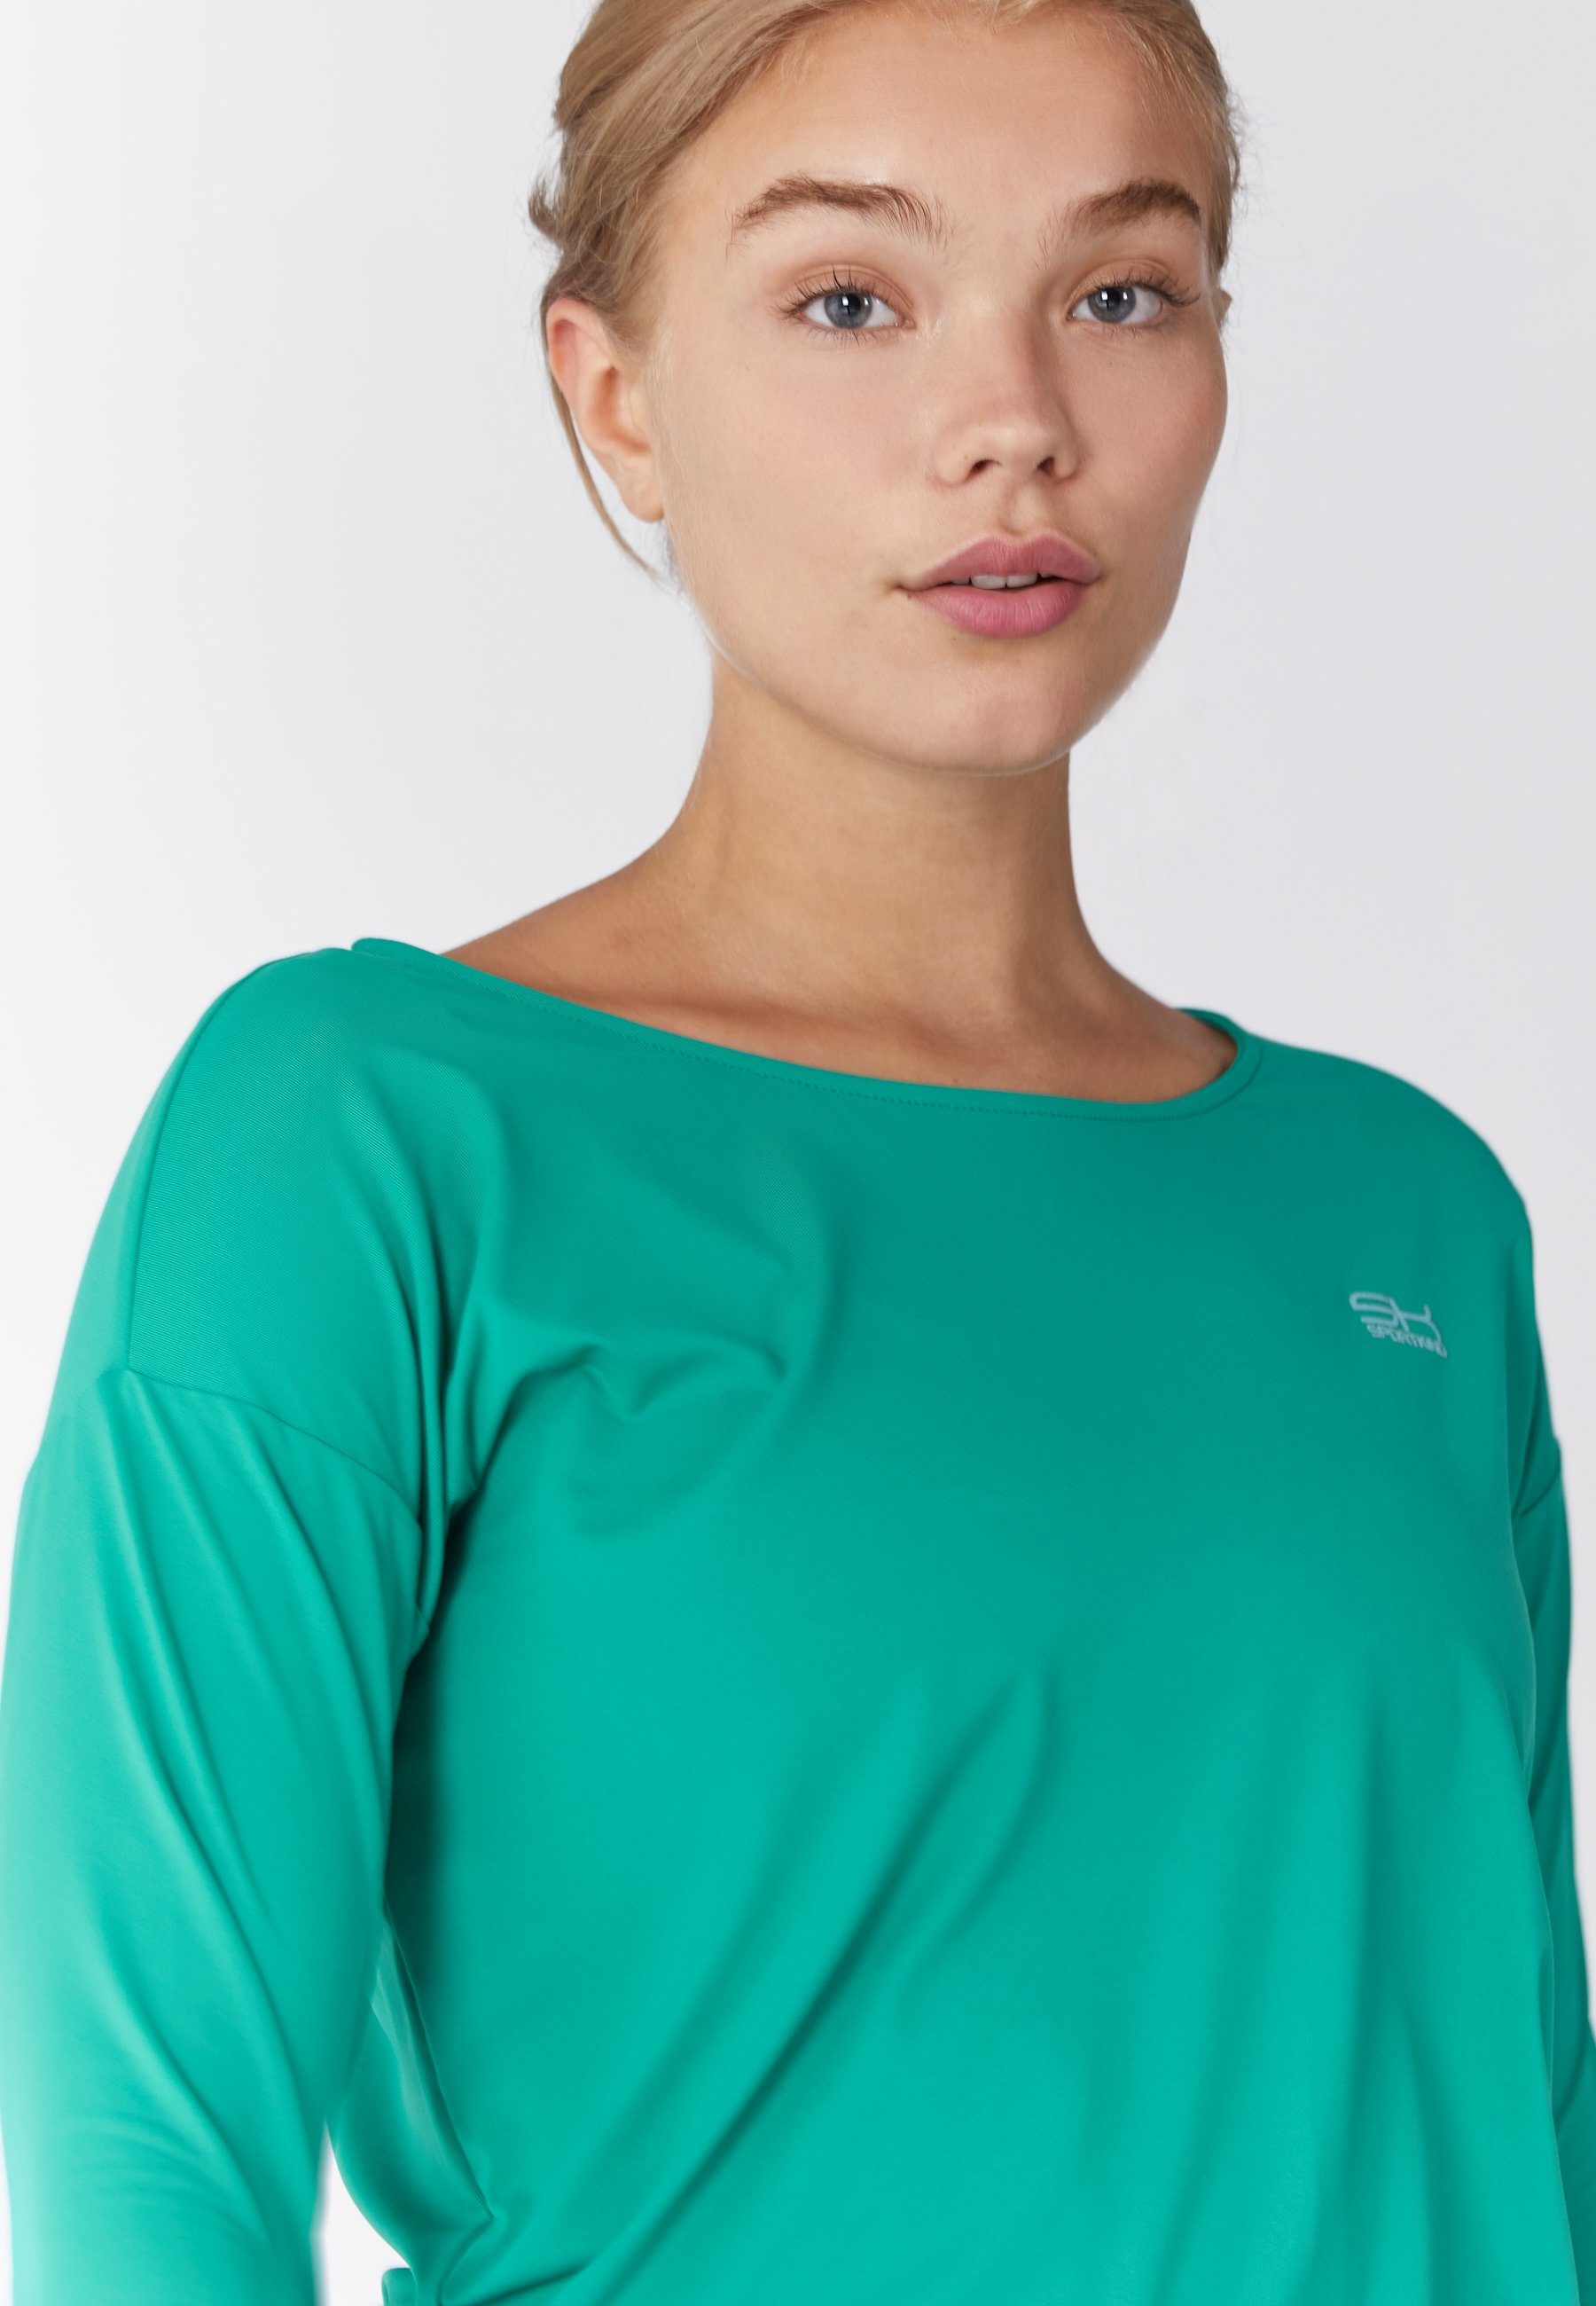 smaragd Shirt grün Funktionsshirt Mädchen Tennis Damen Loose Fit & 3/4 SPORTKIND